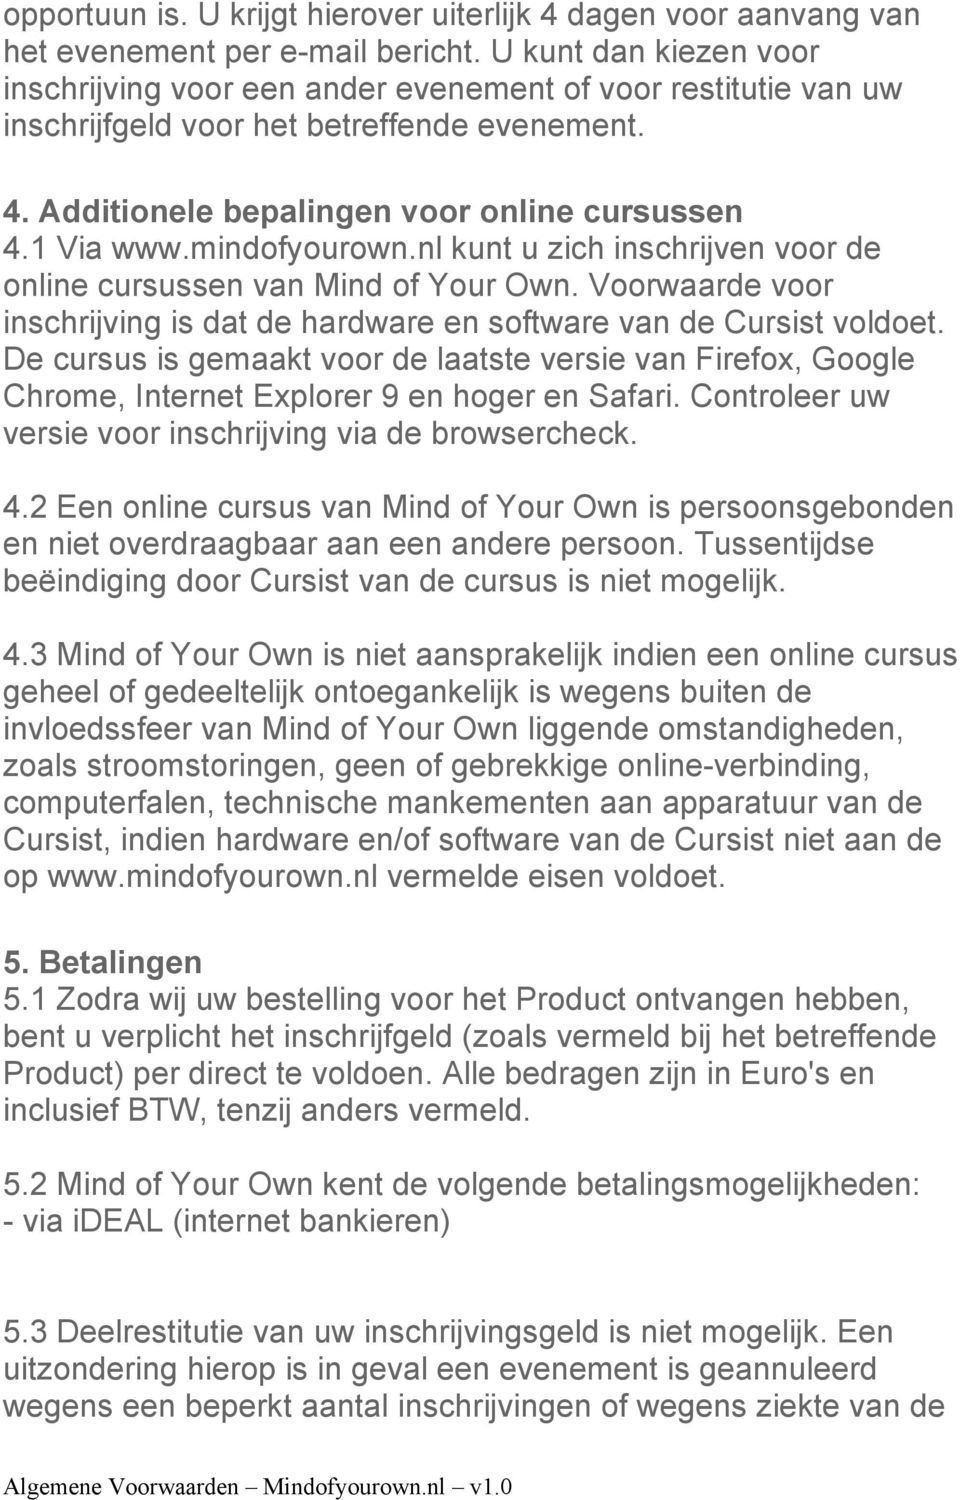 mindofyourown.nl kunt u zich inschrijven voor de online cursussen van Mind of Your Own. Voorwaarde voor inschrijving is dat de hardware en software van de Cursist voldoet.